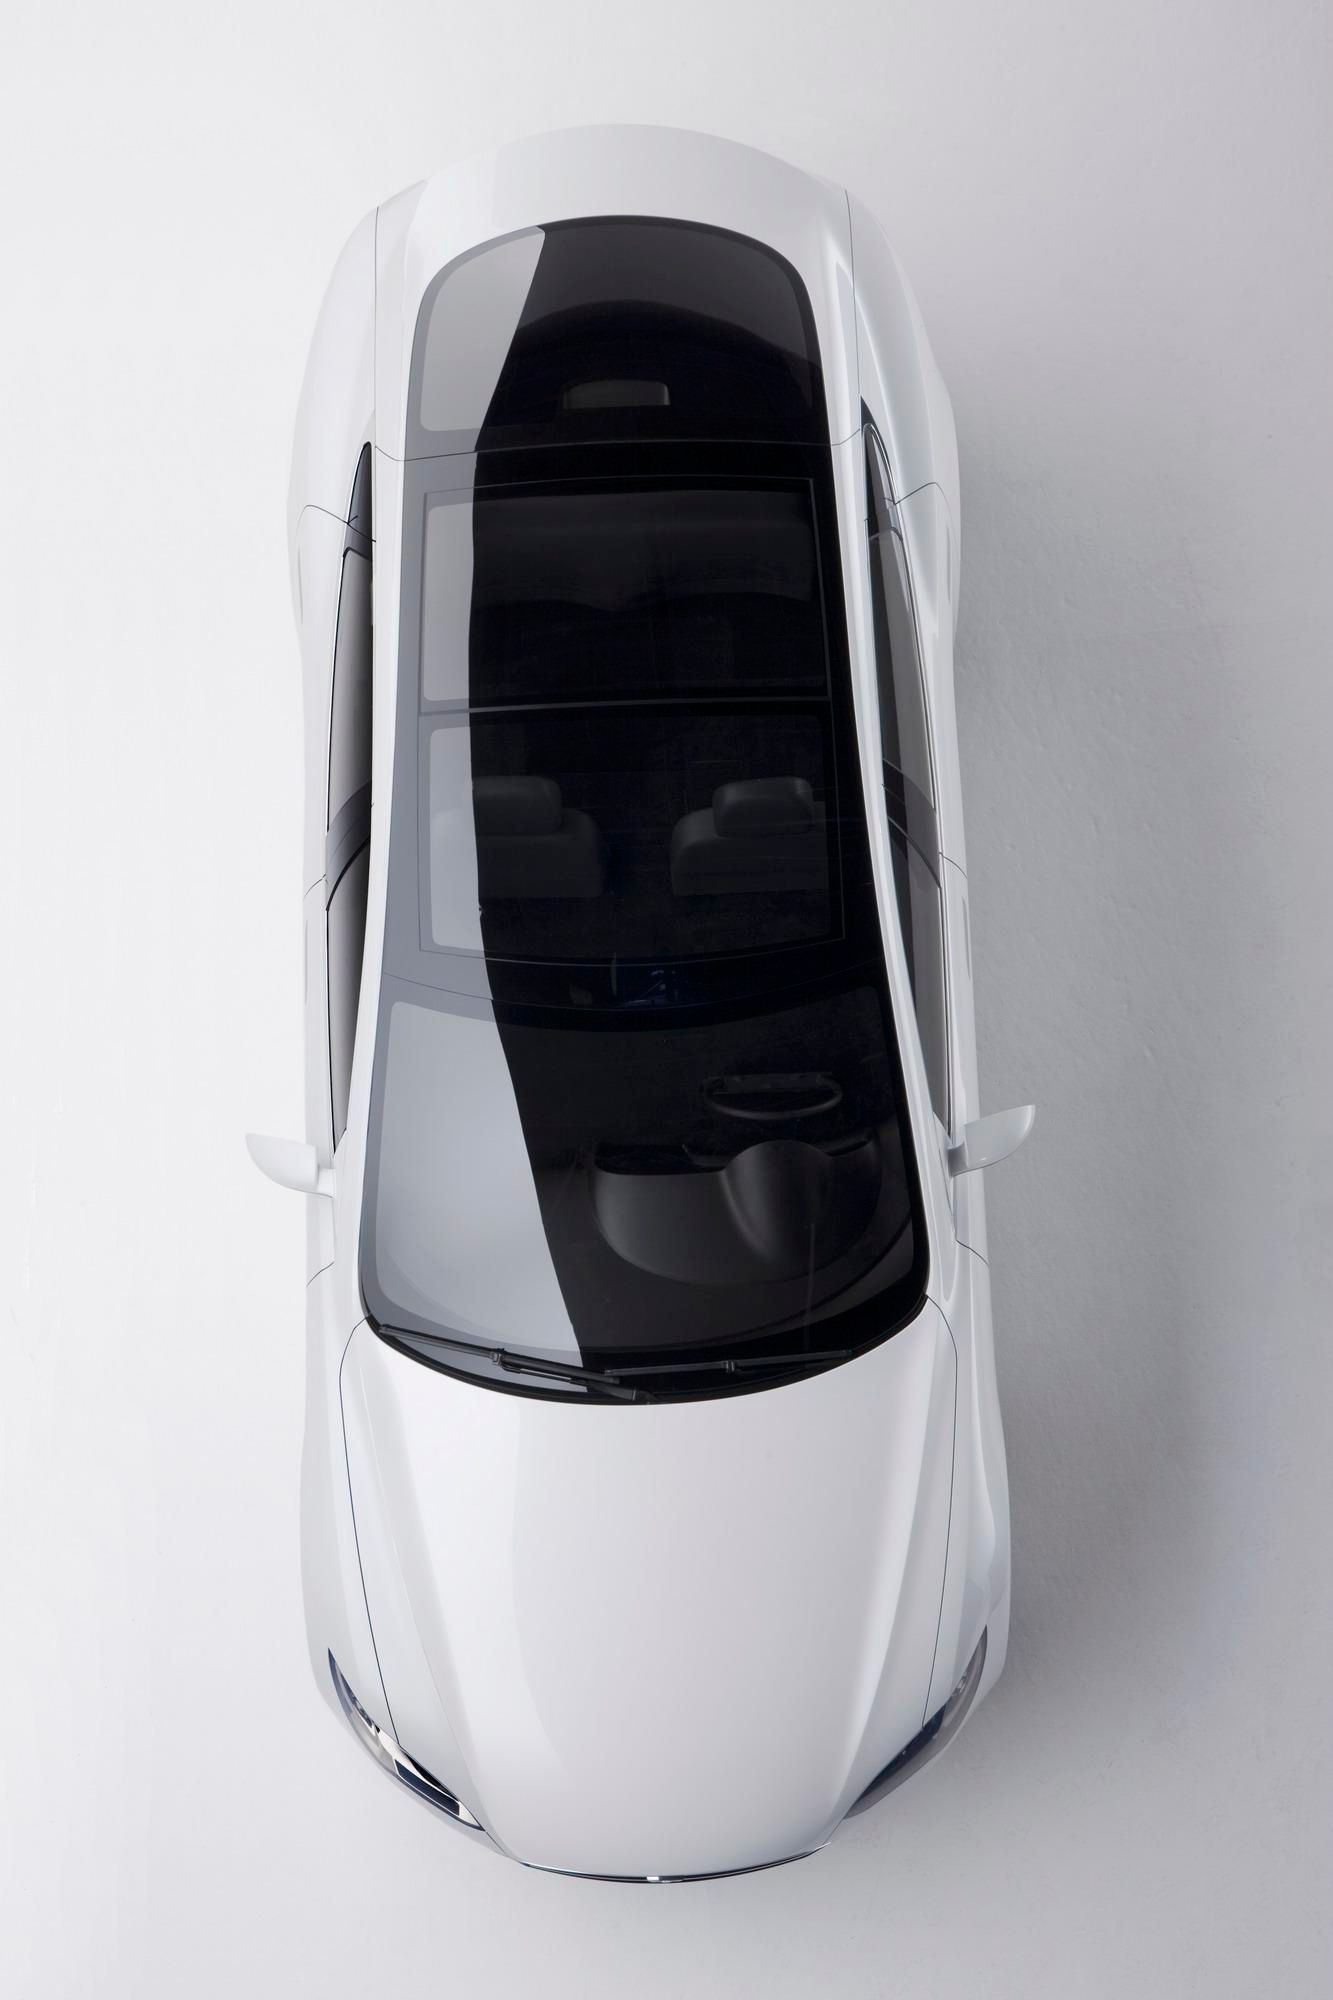 2010 Tesla Model S